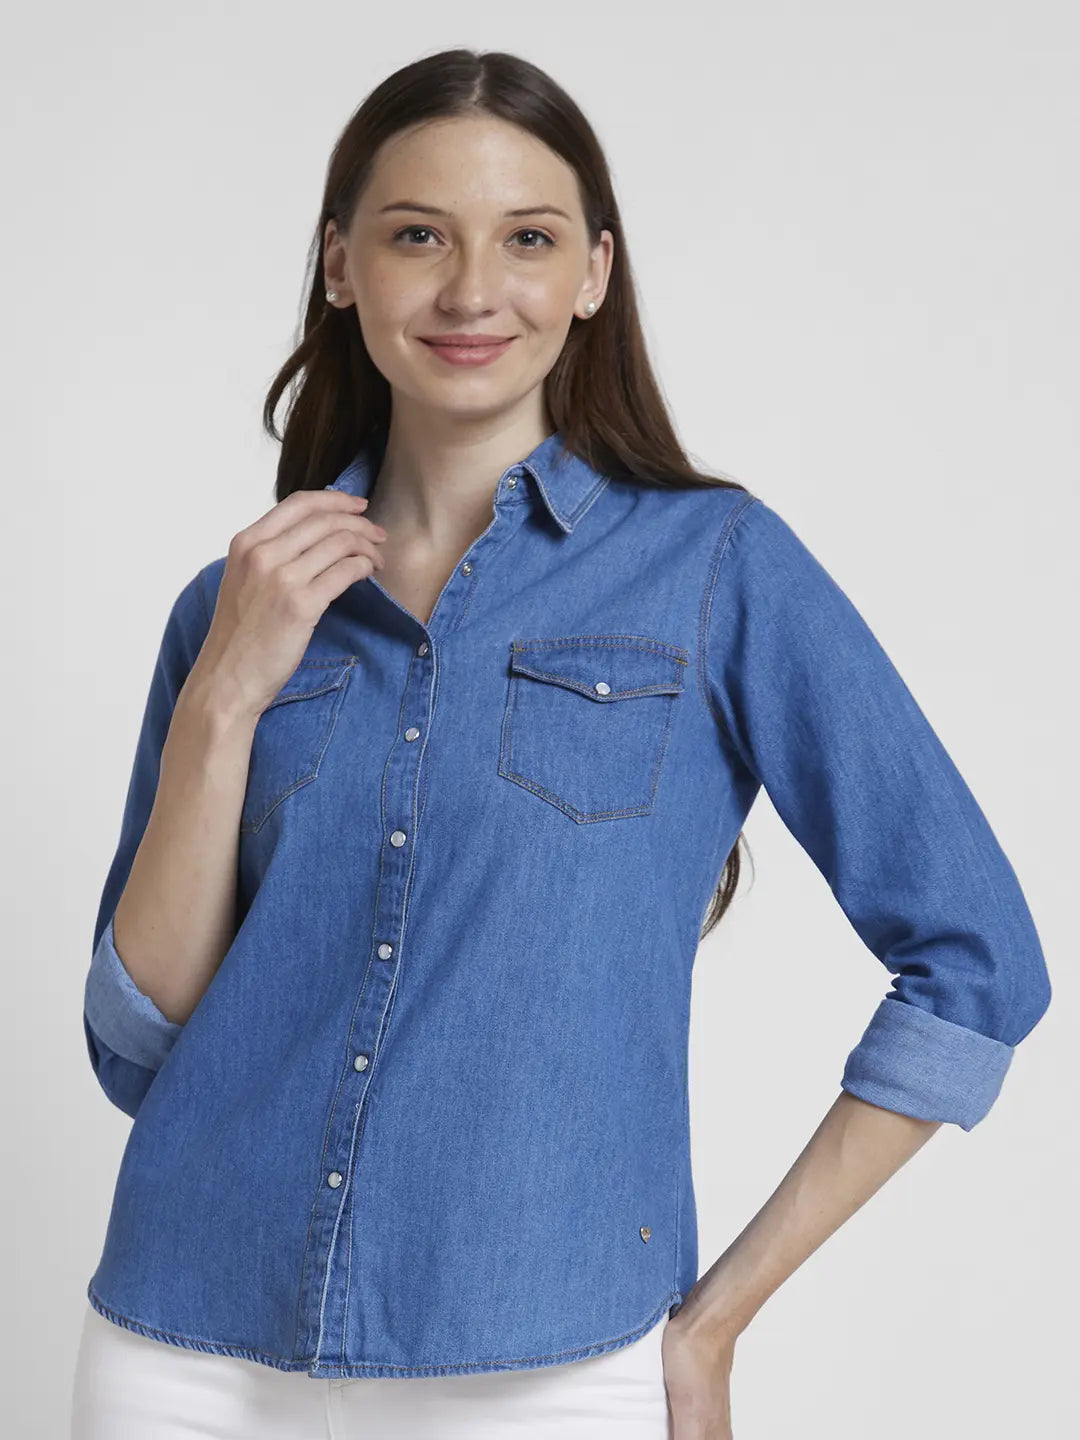 Spykar Women Light Blue Cotton Regular Fit Full Sleeve Plain Shirt